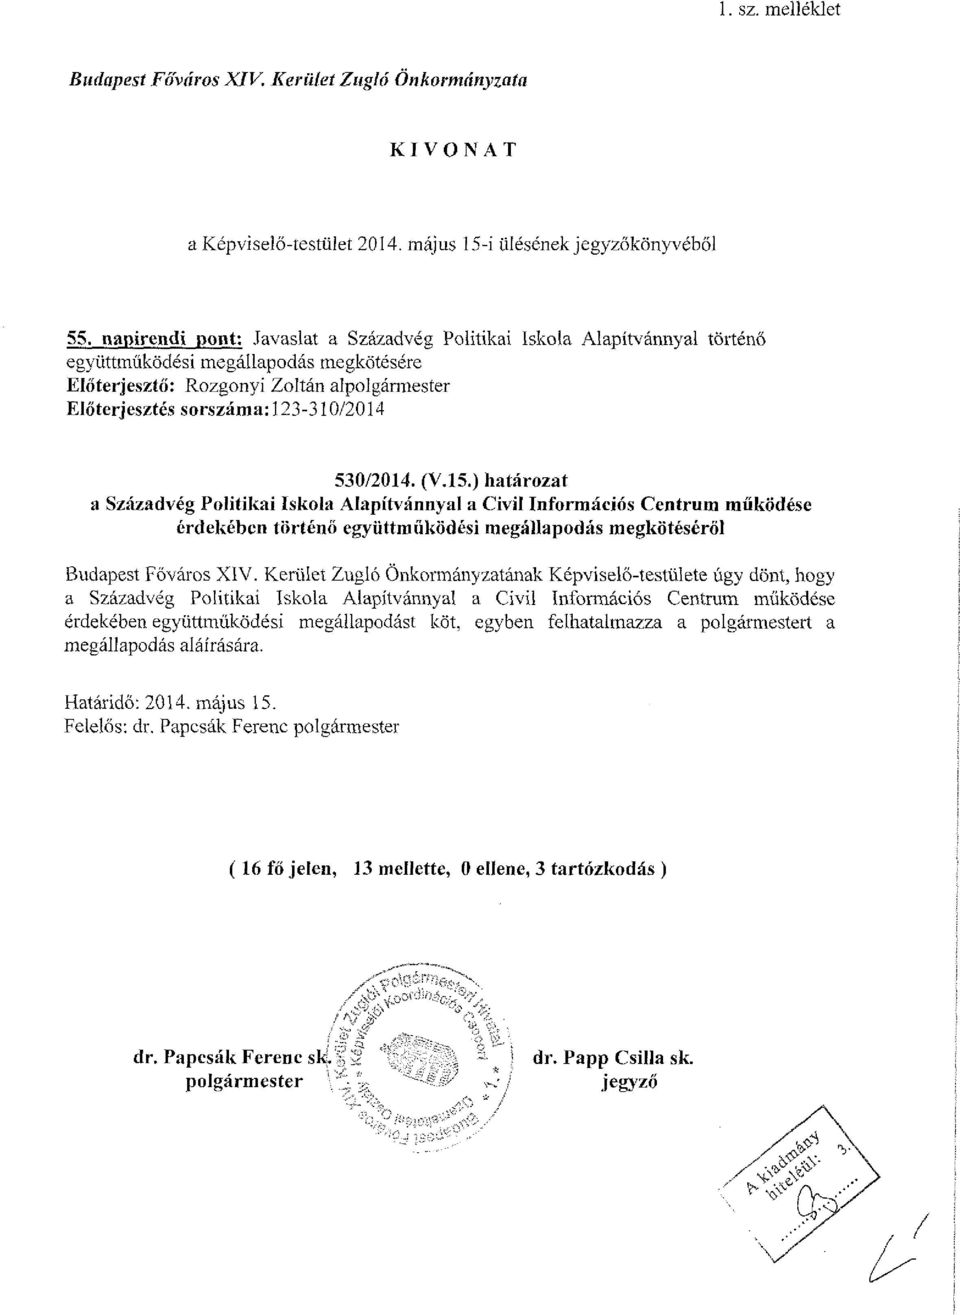 530/2014. (V.15.) határozat a Századvég Politikai iskola Alapítvánnyal a Civil Információs Centrum működése érdekében történő együttműködési megállapodás megkötéséről Budapest Főváros XIV.